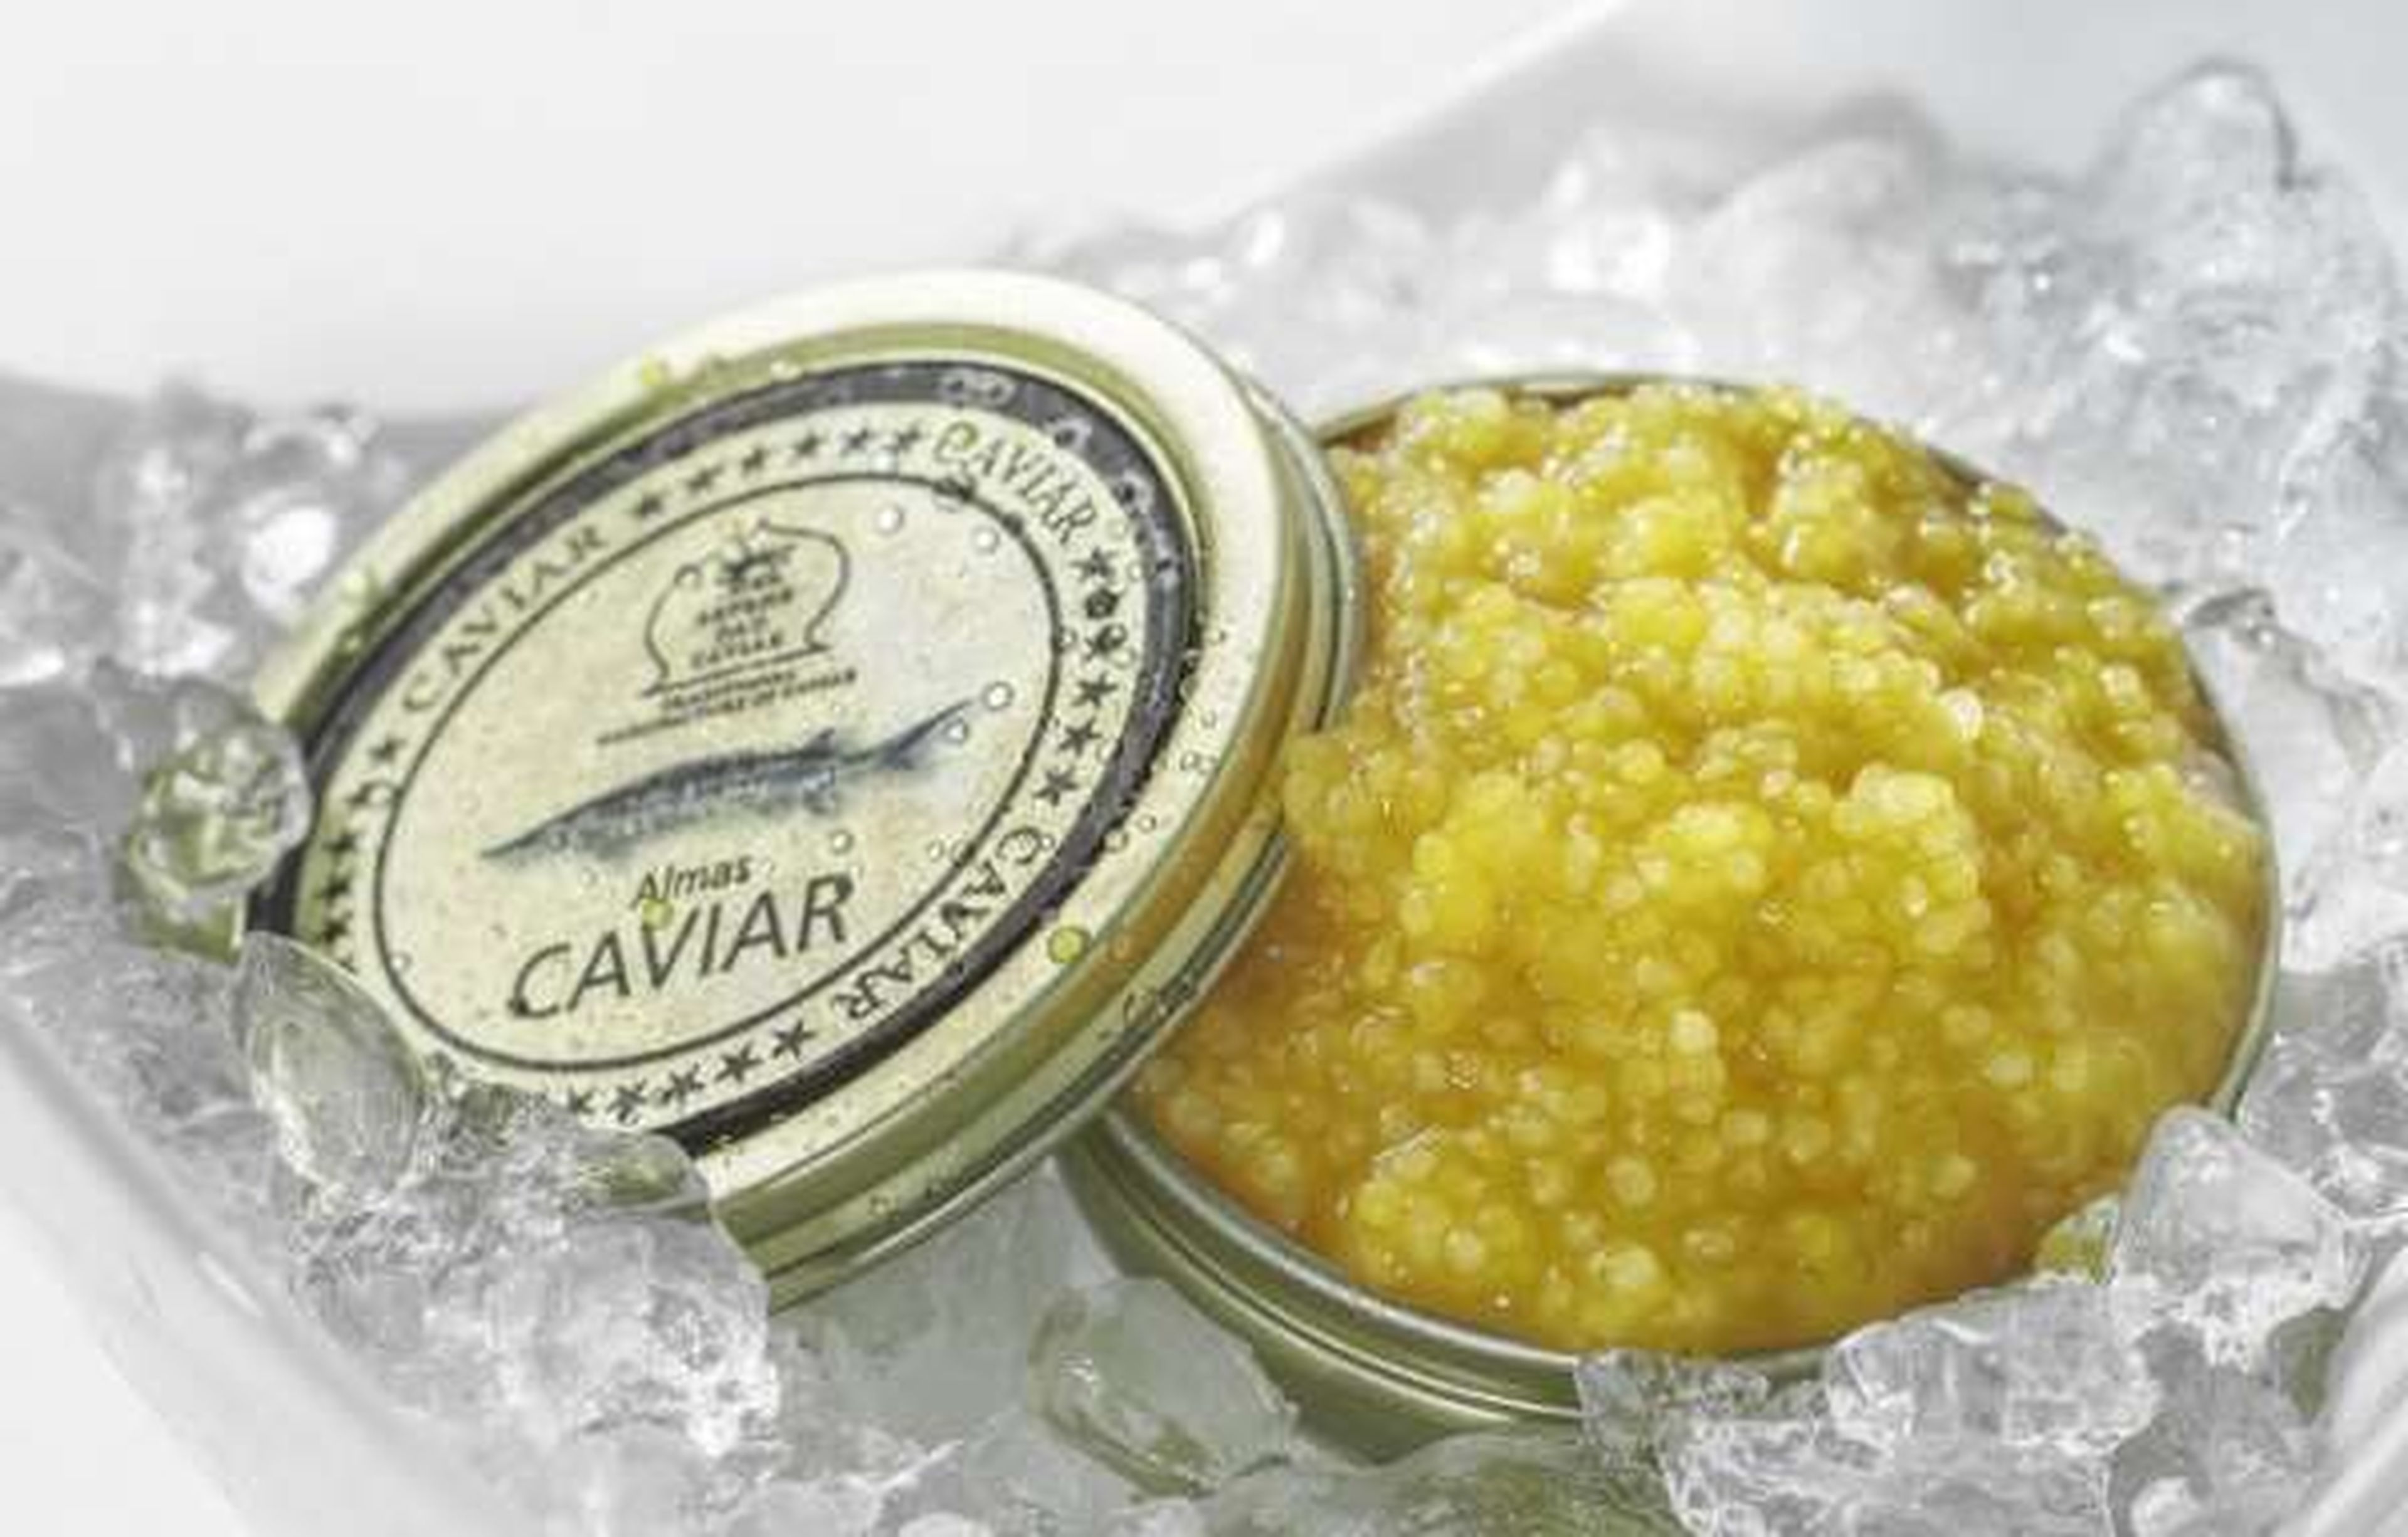 Caviar Almas